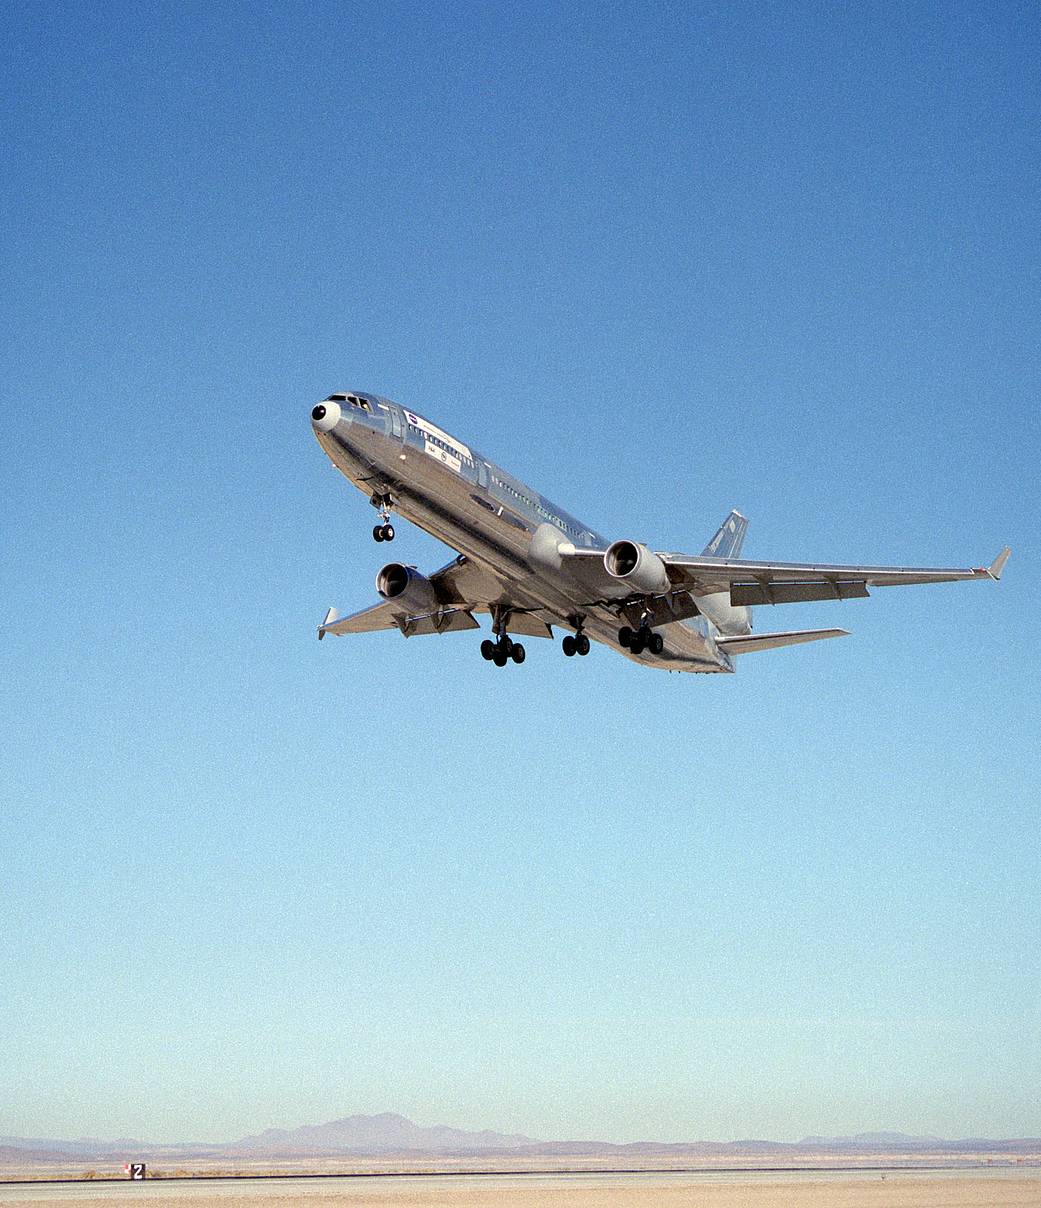 MD-11 aircraft in flight.